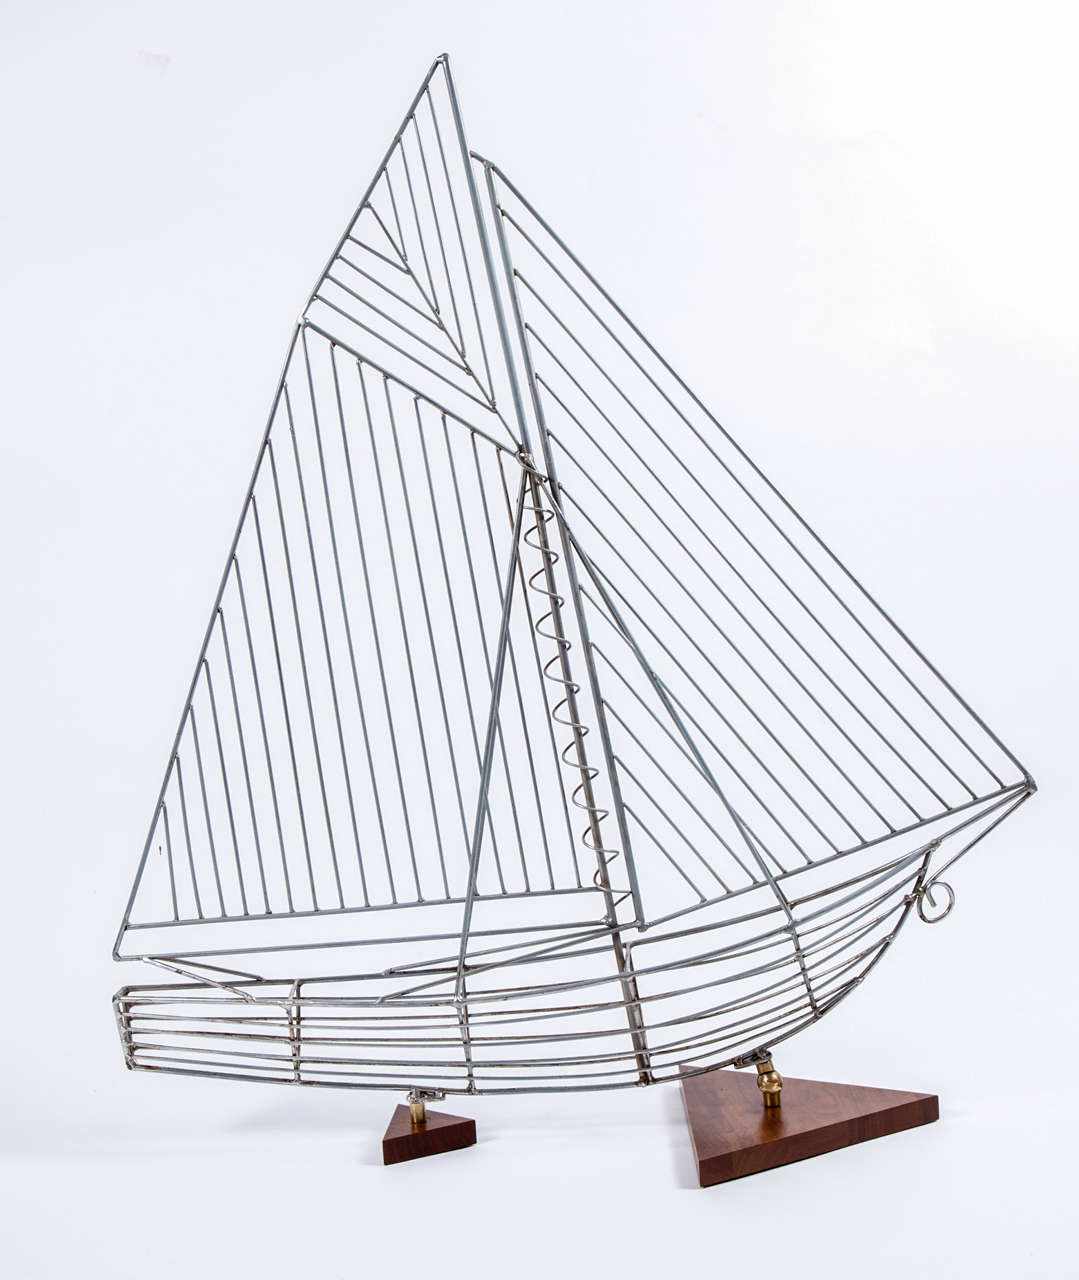 Modernes Segelbootmodell aus Stahlstäben, montiert auf dreieckigen Sockeln aus gebeiztem Holz.  USA, um 1970.